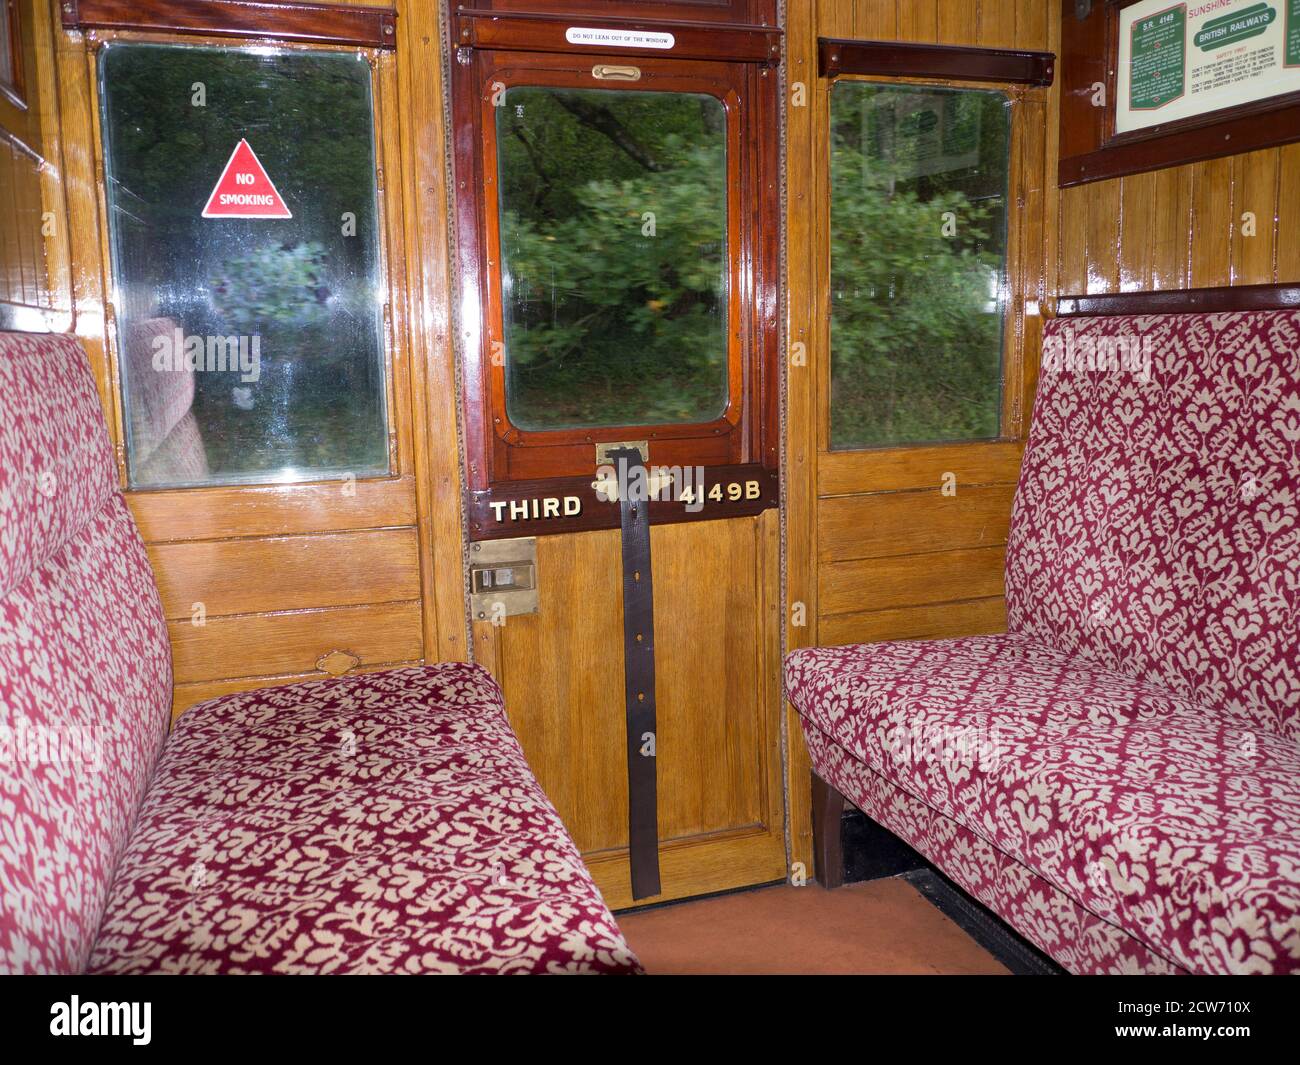 Historische Eisenbahnwaggon Interieur mit polierter Holzvertäfelung und Drop-down-Fenster zum Öffnen .das Fenster wurde angehoben und gesenkt mit einem Lederband. Stockfoto